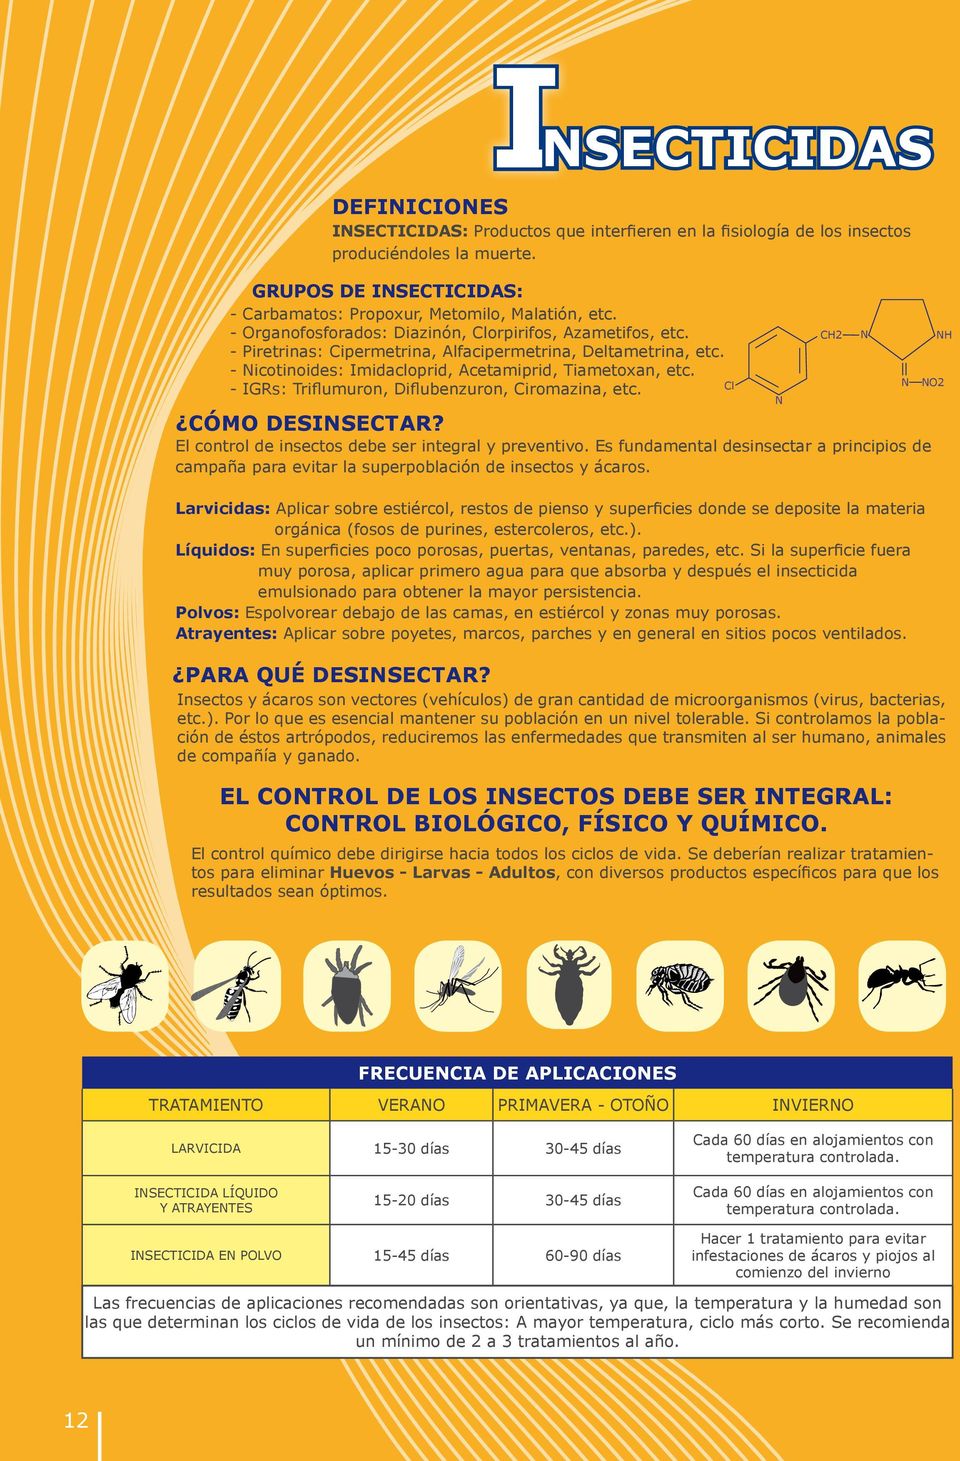 - IGRs: Triflumuron, Diflubenzuron, Ciromazina, etc. CÓMO DESINSECTAR? El control de insectos debe ser integral y preventivo.